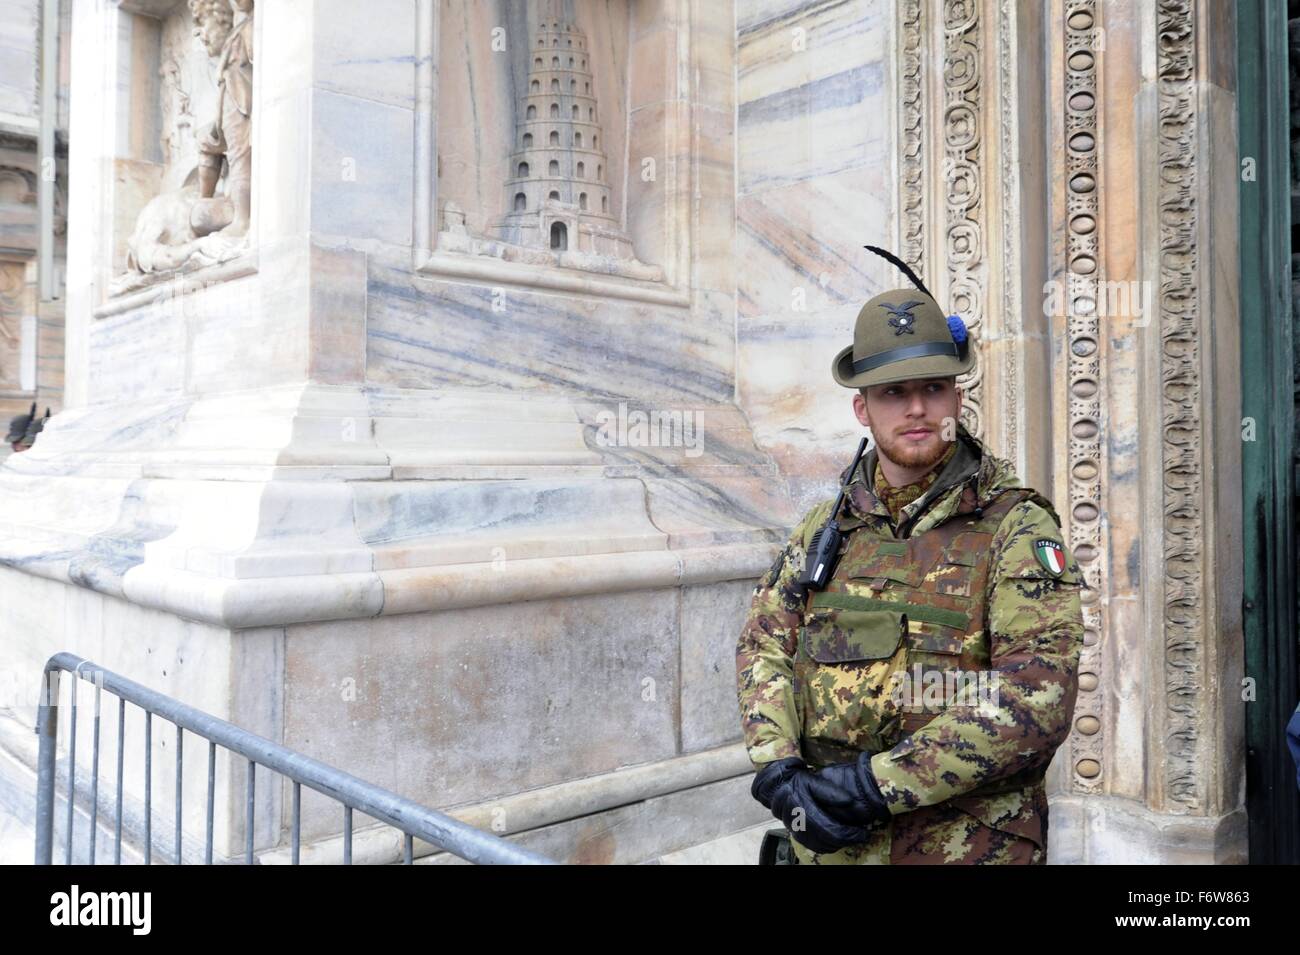 Milan, Italie. 19 novembre, 2015. L'armée dans la lutte contre le terrorisme service de sécurité autour de la Cathédrale Duomo Crédit : Dino Fracchia/Alamy Live News Banque D'Images